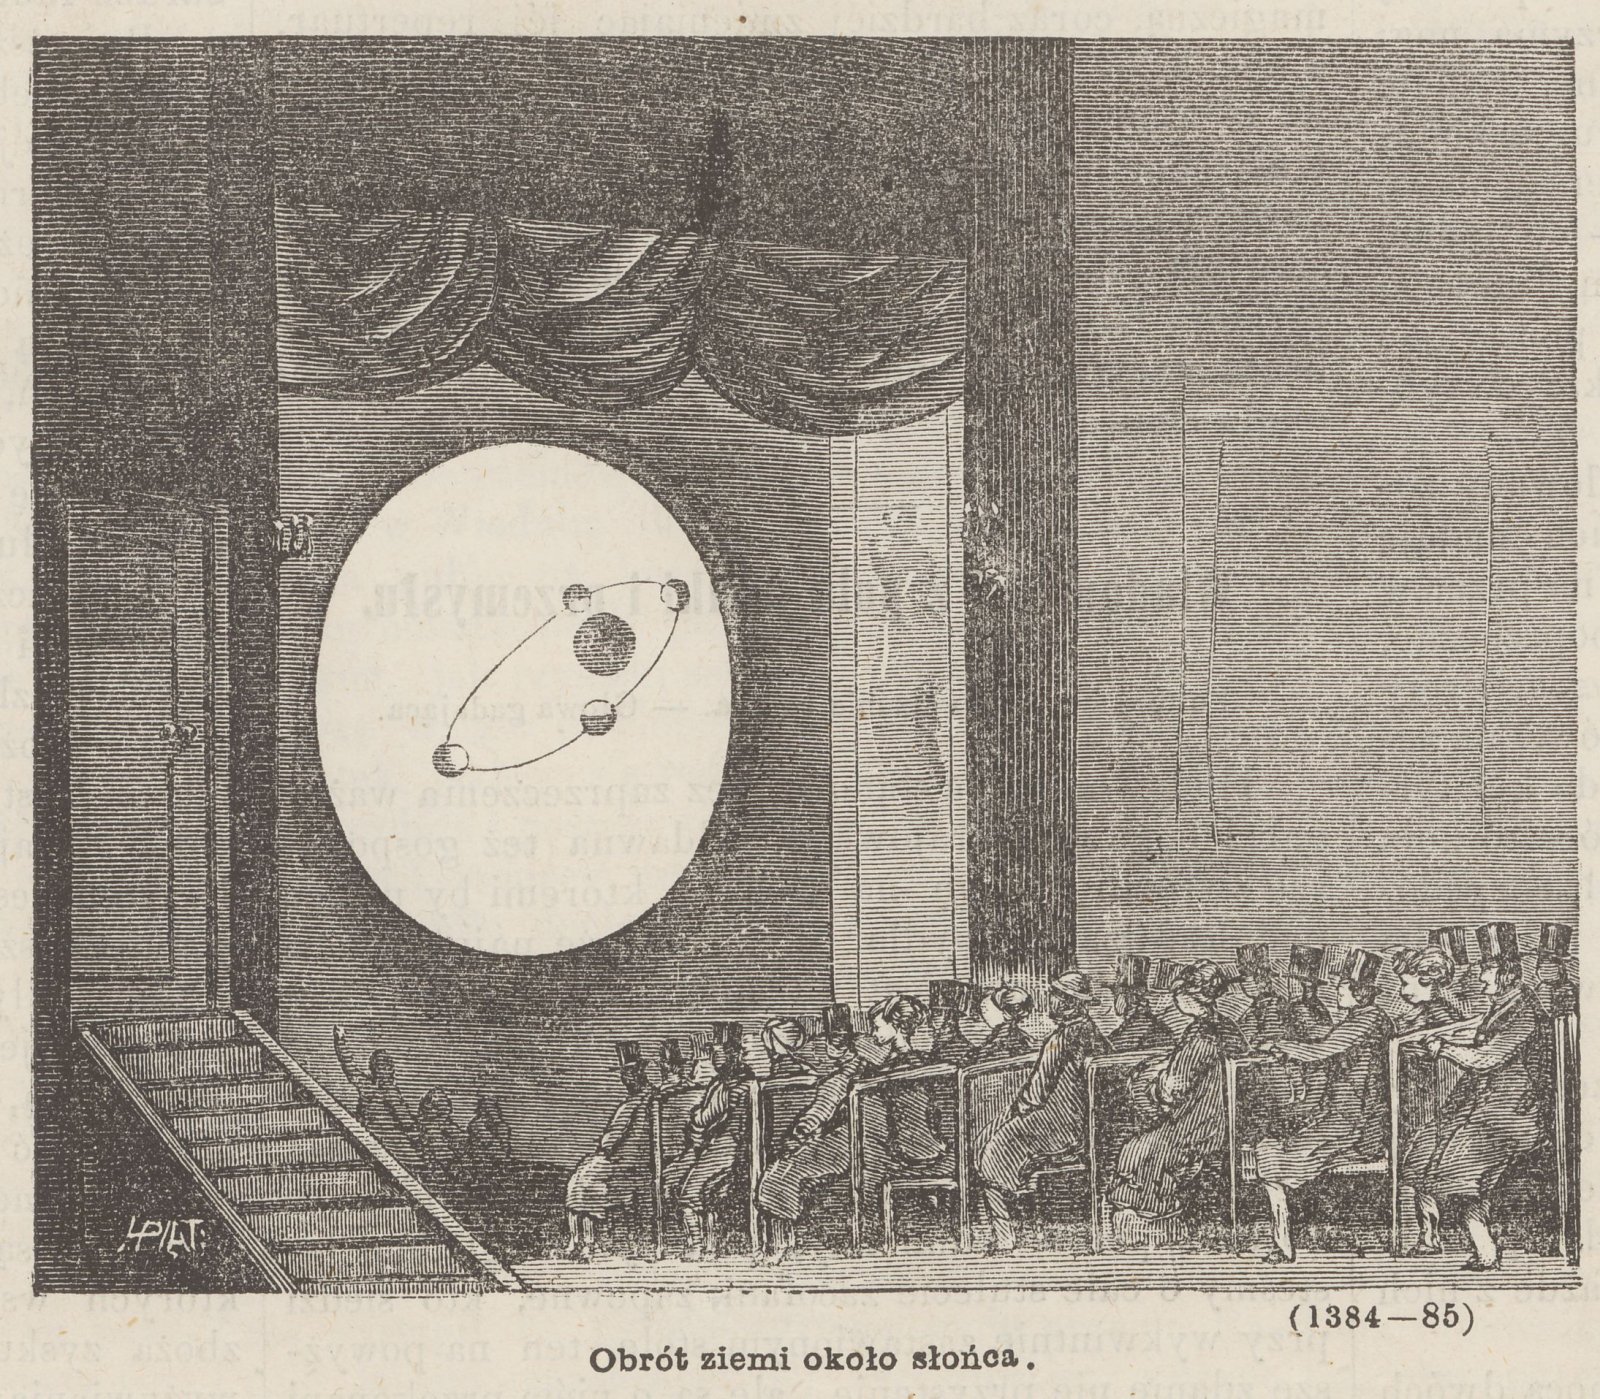 Obrót Ziemi wokół Słońca - pokaz obrazów optycznych pana Krosso, rycina w czasopismie “Kłosy” 1869, nr 231 s. 341.